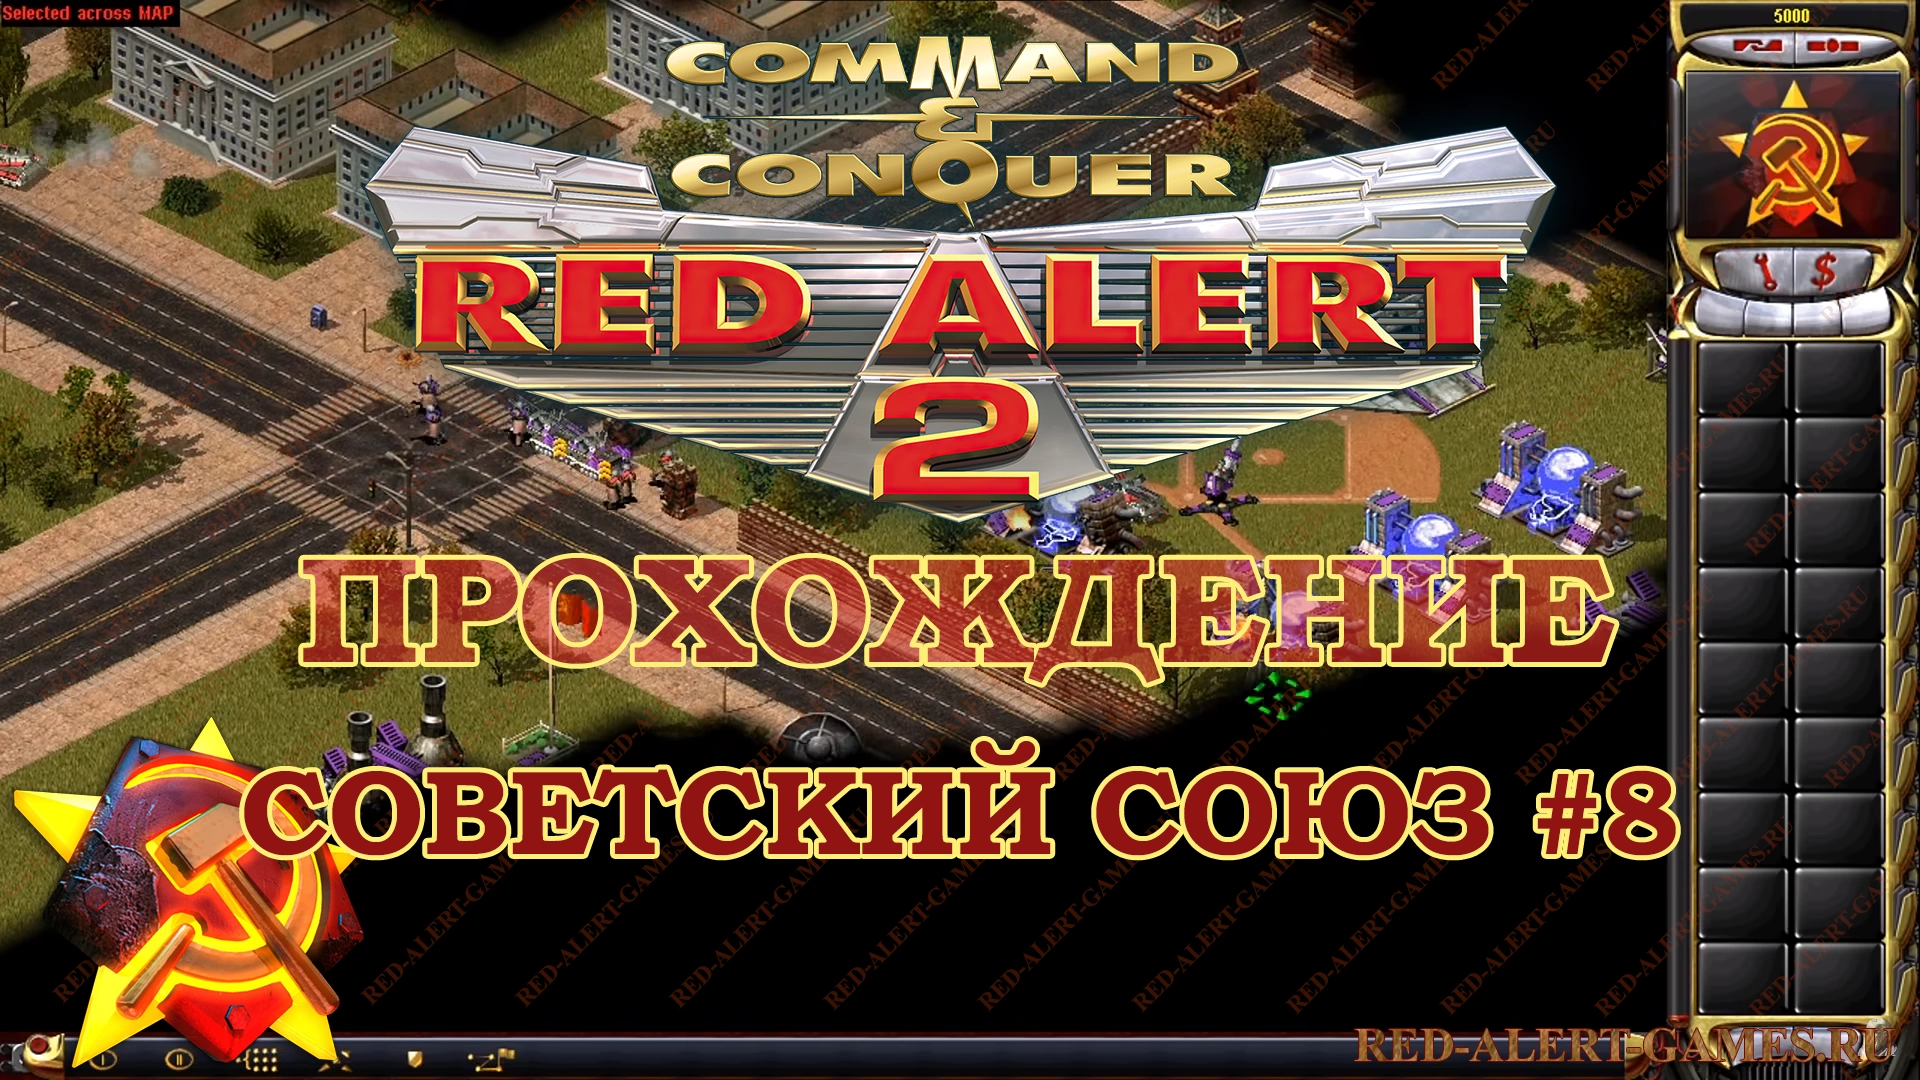 Red Alert 2 Прохождение Советский Союз - Миссия 8. Осквернение (Desecration)